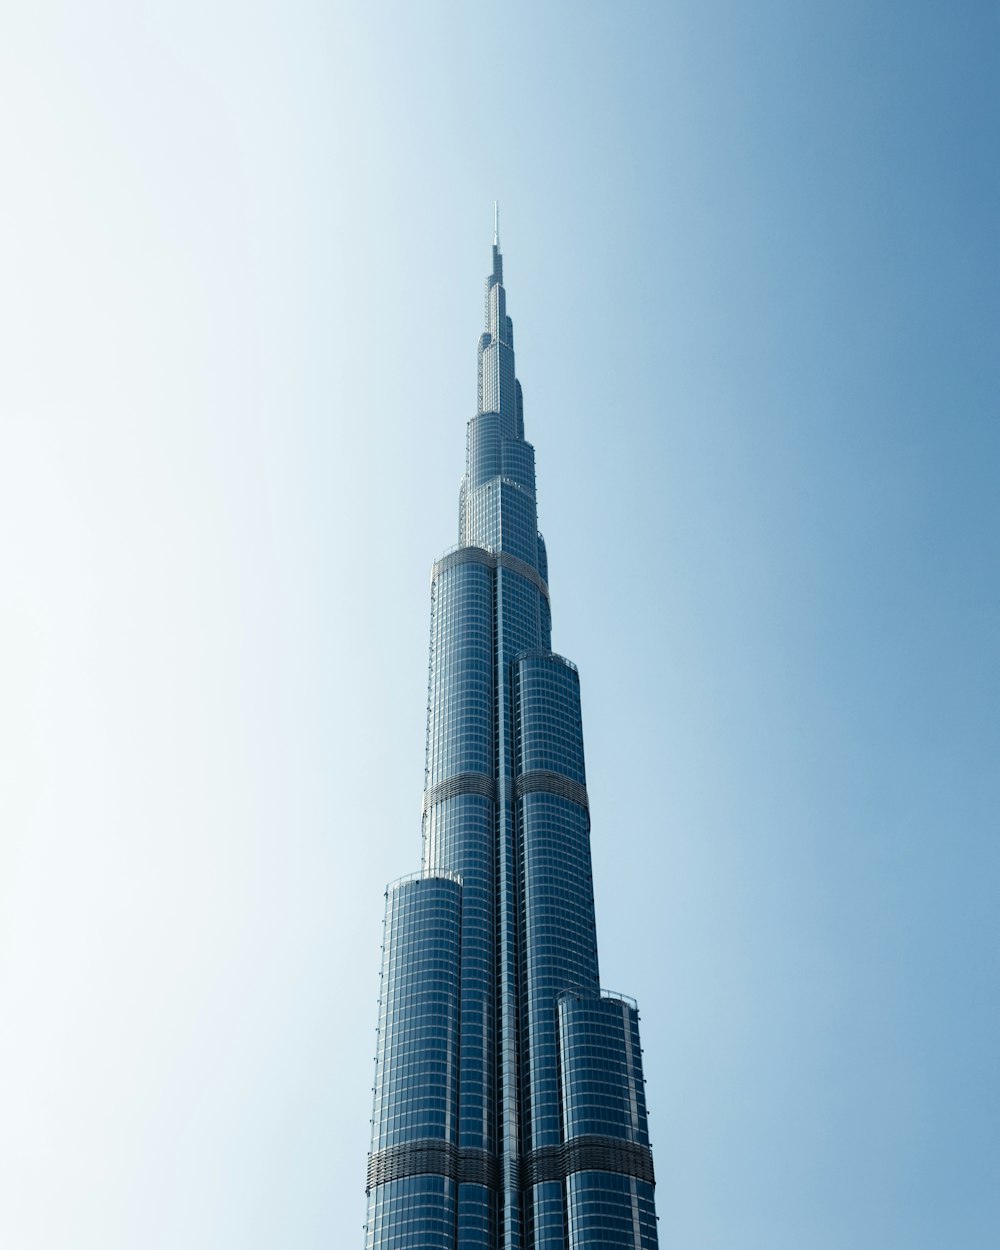 하늘에 우뚝 솟은 매우 높은 건물